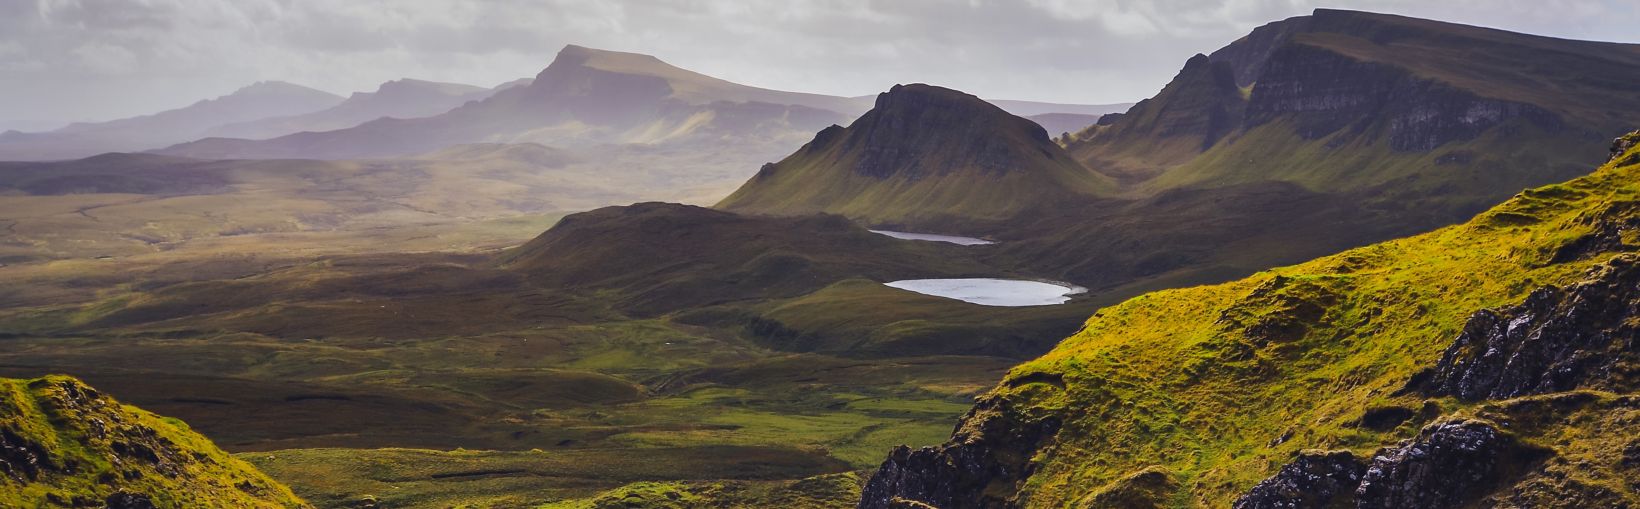 Paesaggio delle montagne Quiraing sull'isola di Skye, Highlands scozzesi